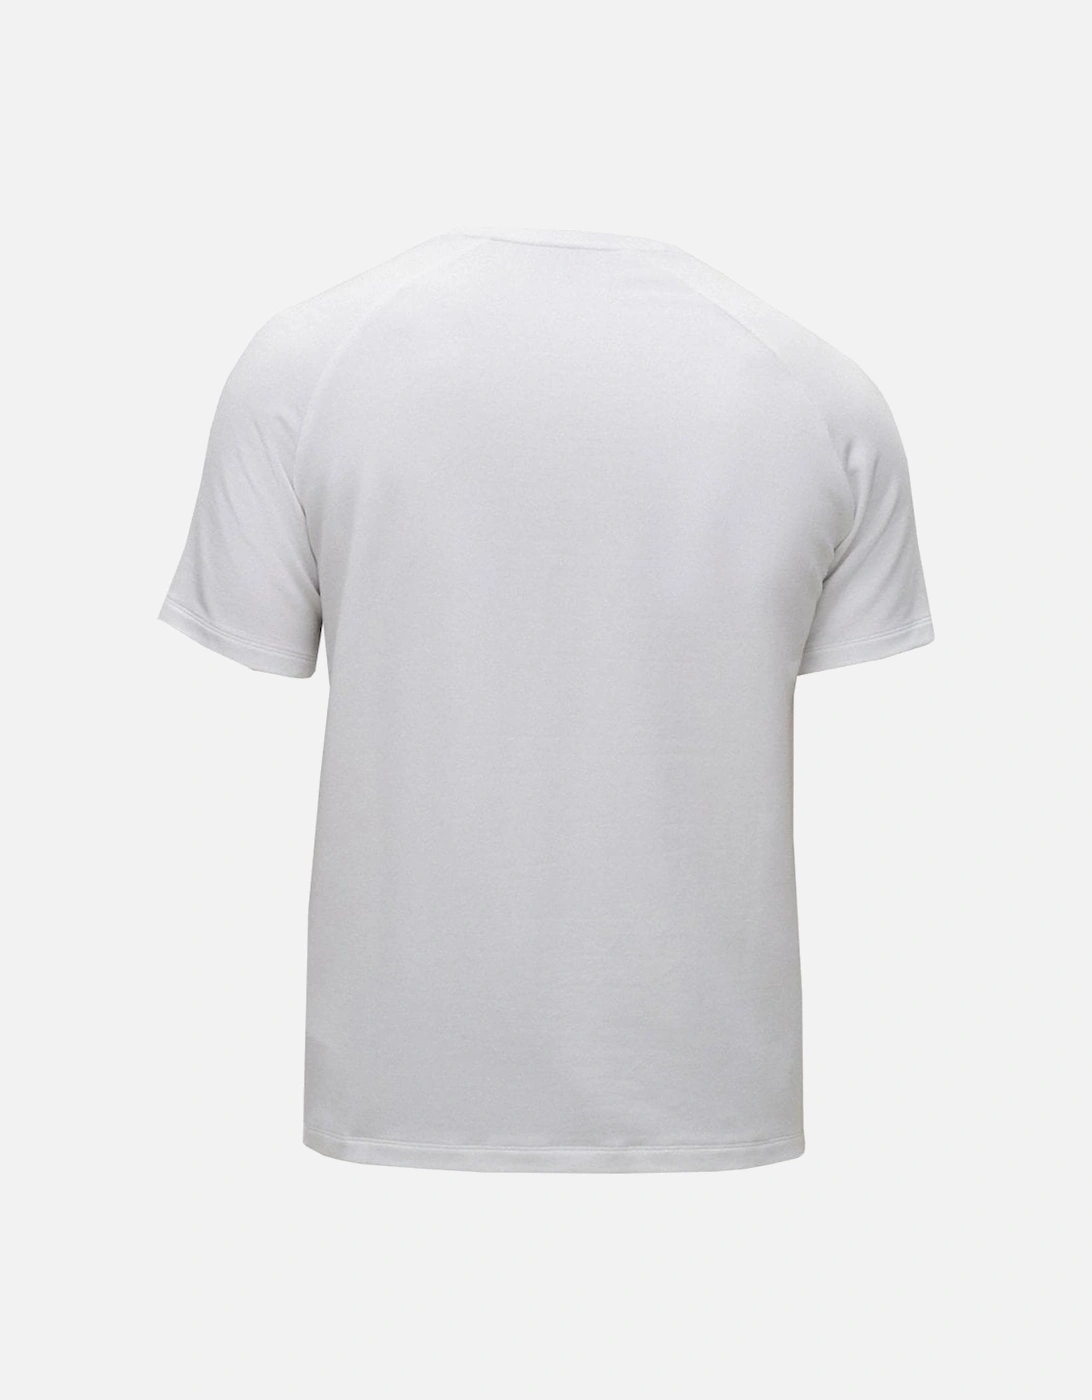 Men's White Fashion T-shirt